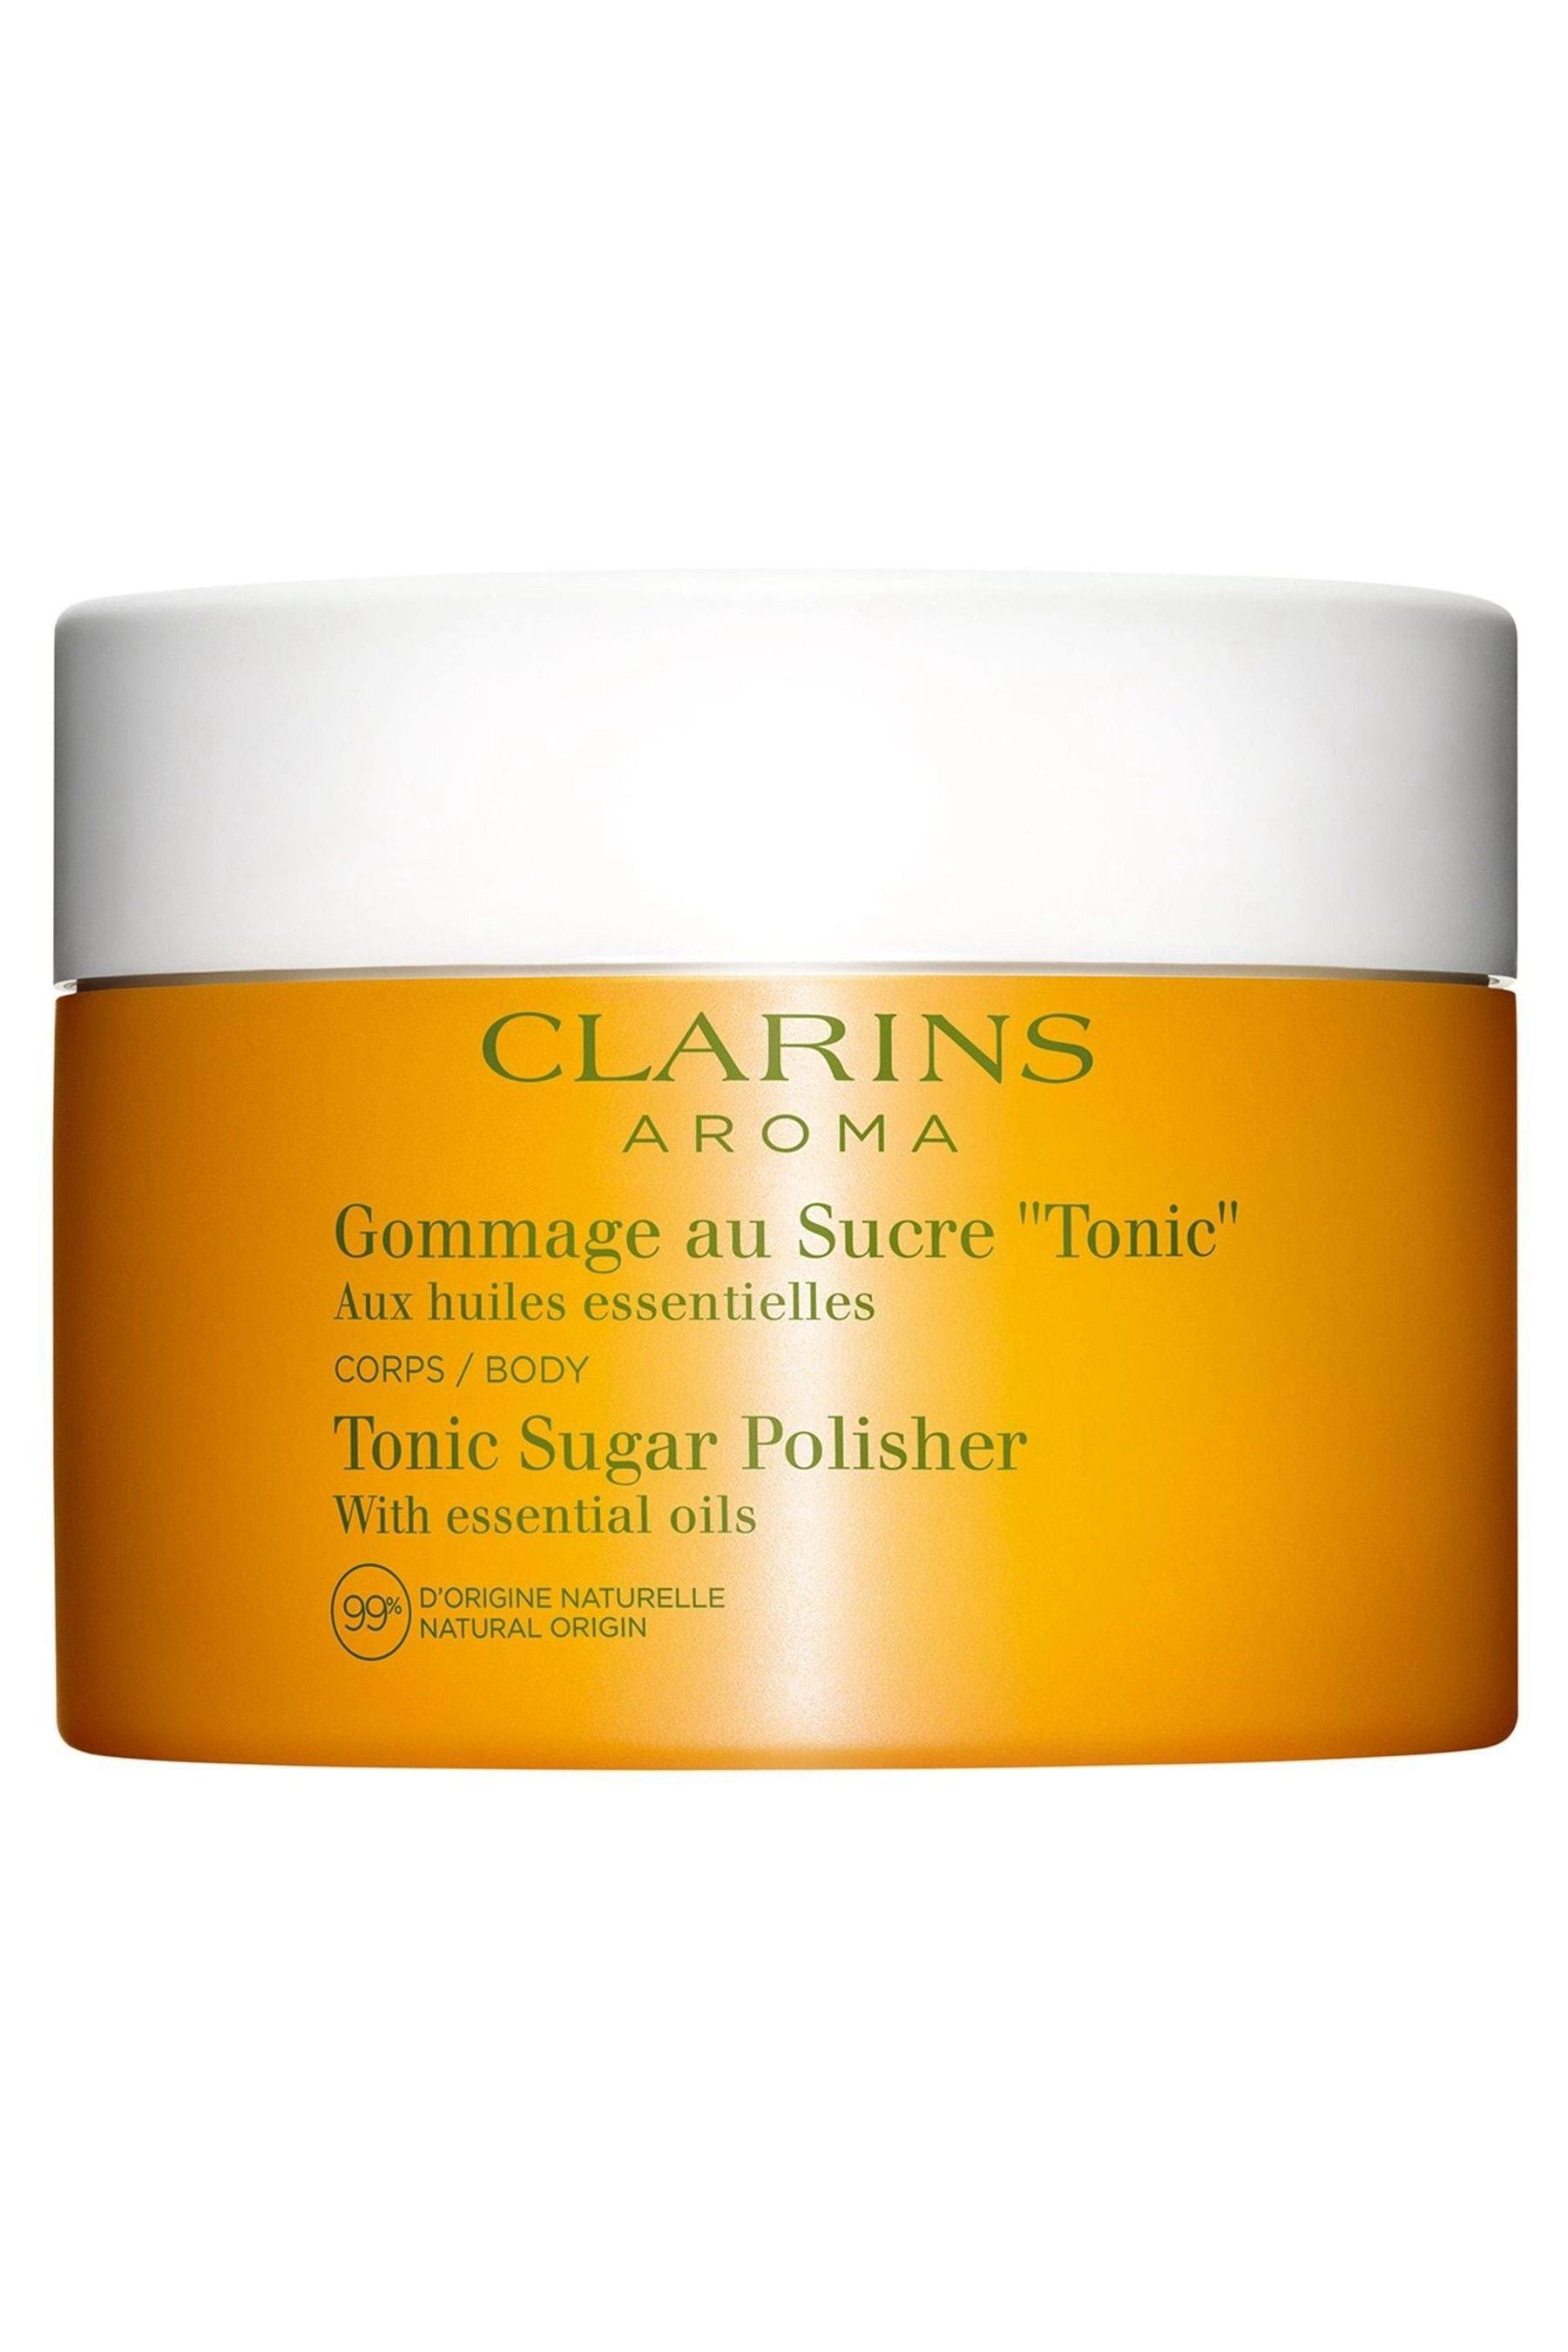 Clarins - Tonic Sugar Polisher (250g)